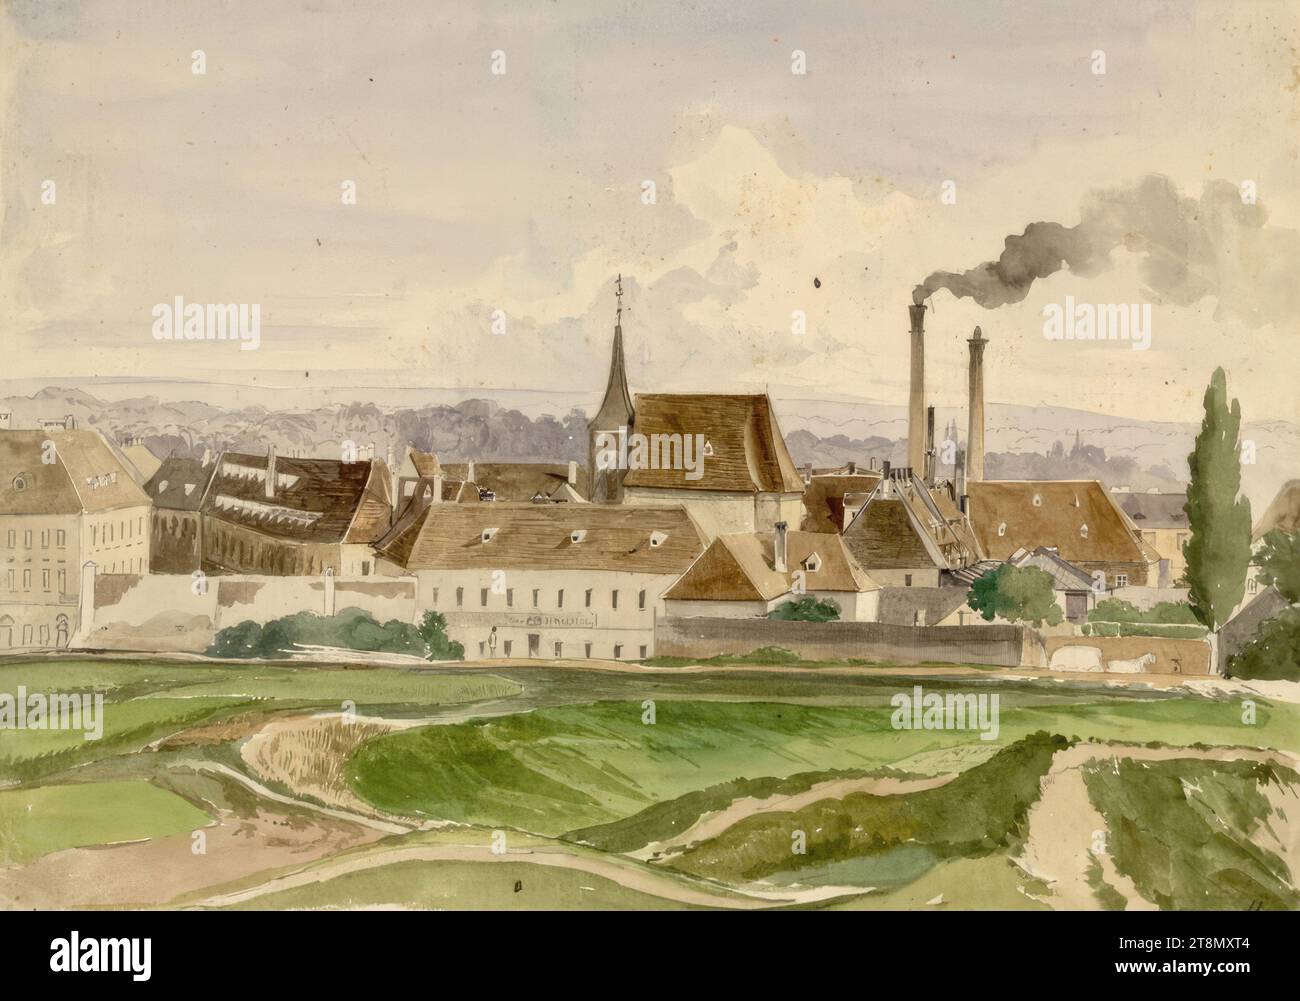 L'ancien hôpital près de Sankt Marx et la brasserie, anonyme, 19e siècle, dessin, aquarelle, 23,4 x 33,3 cm Banque D'Images